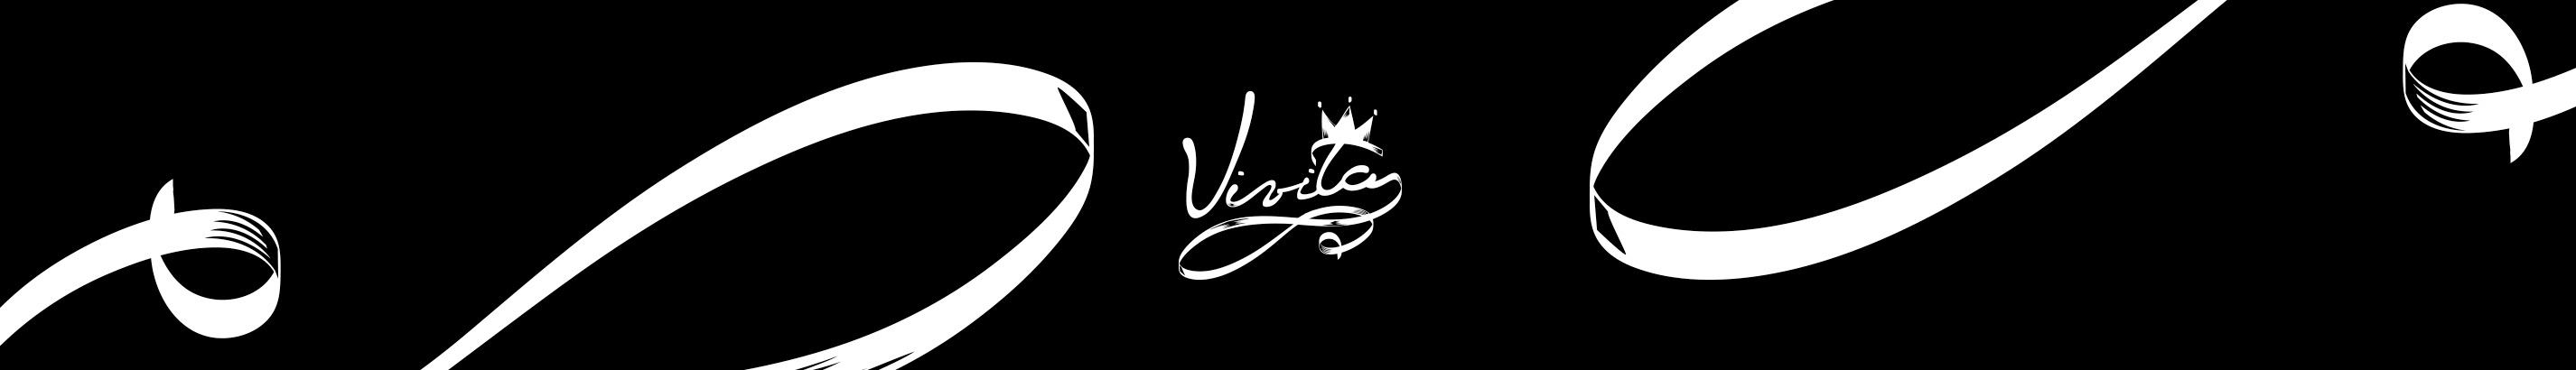 Vivita Centeno's profile banner